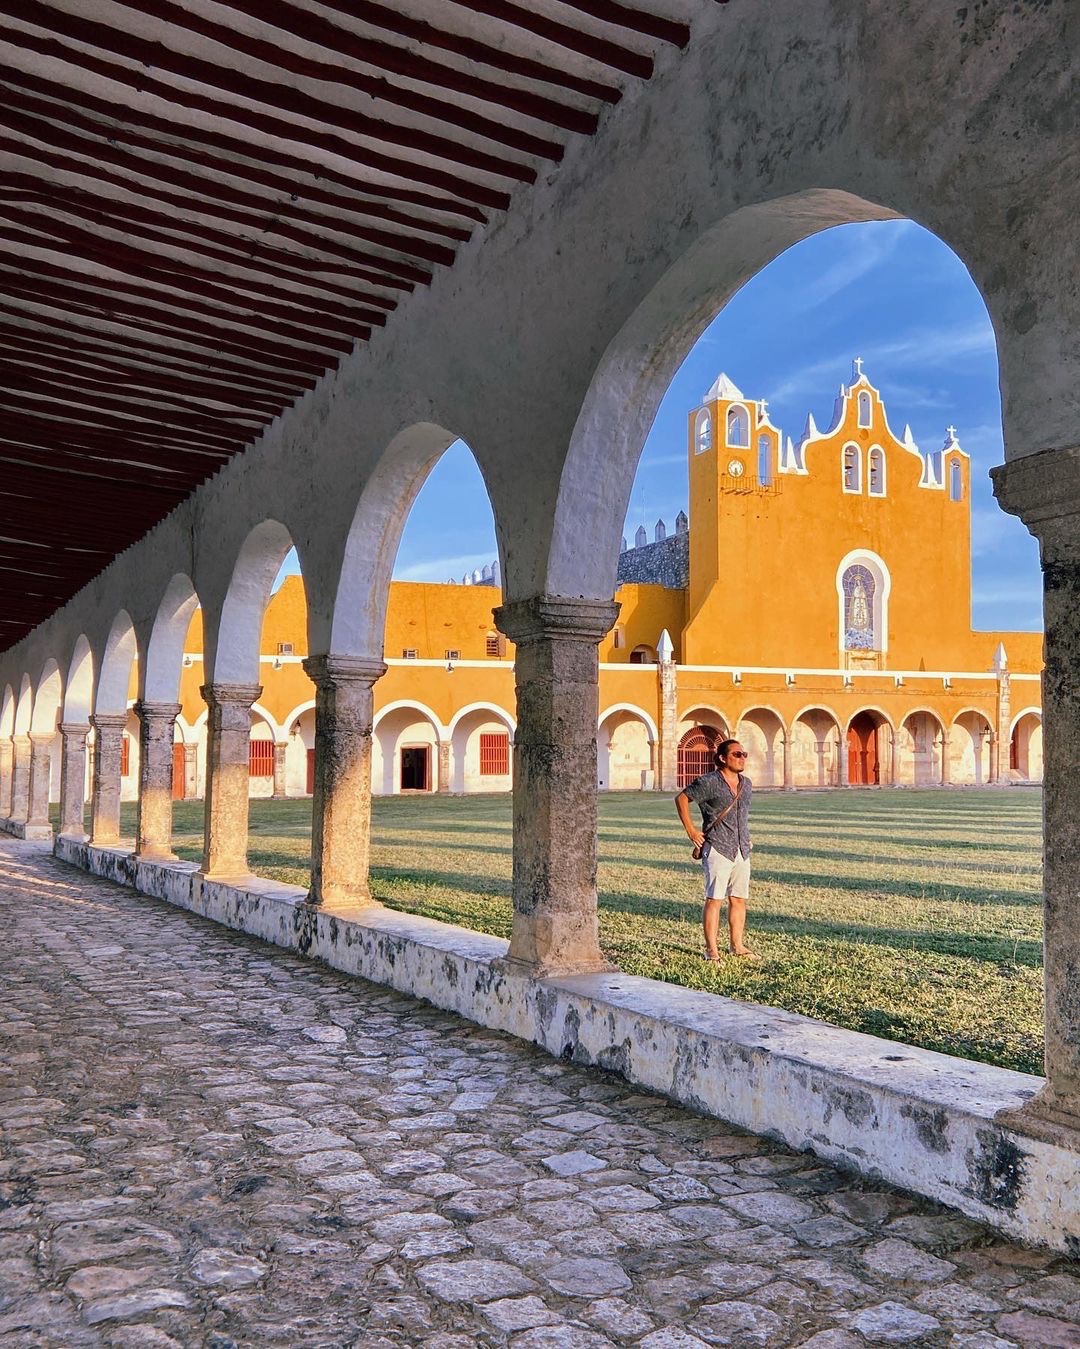 izamal yucatan, convento san antonio de padua